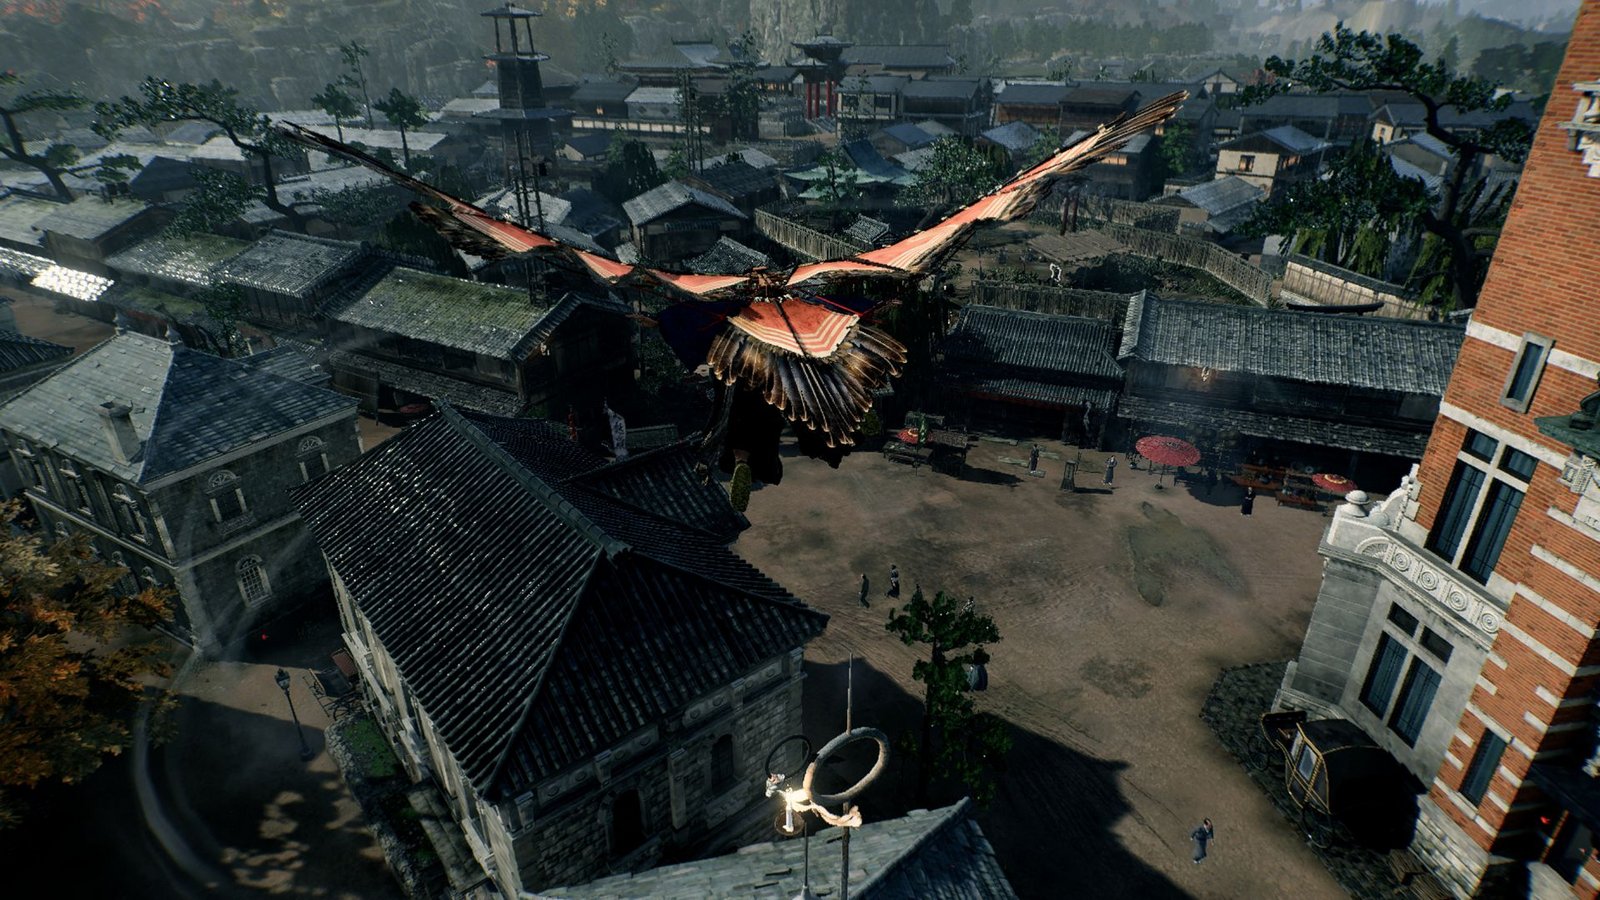 Mit einem künstlichen Paar Flügel schweben wir über den Dächern japanischer Siedlungen.Foto: Sony Entertainment